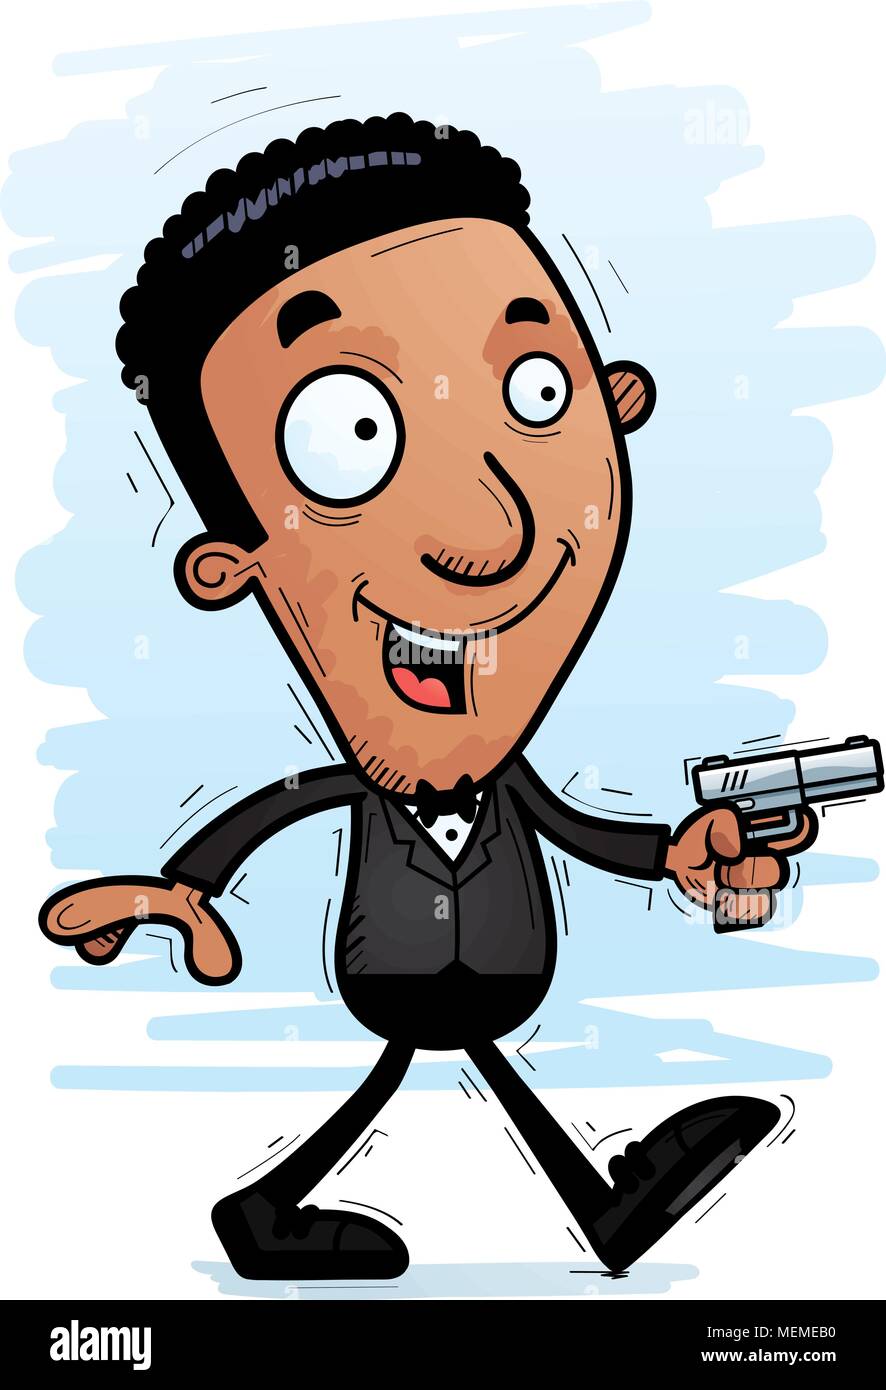 Un cartoon illustration d'un espion noir marche à pied. Illustration de Vecteur